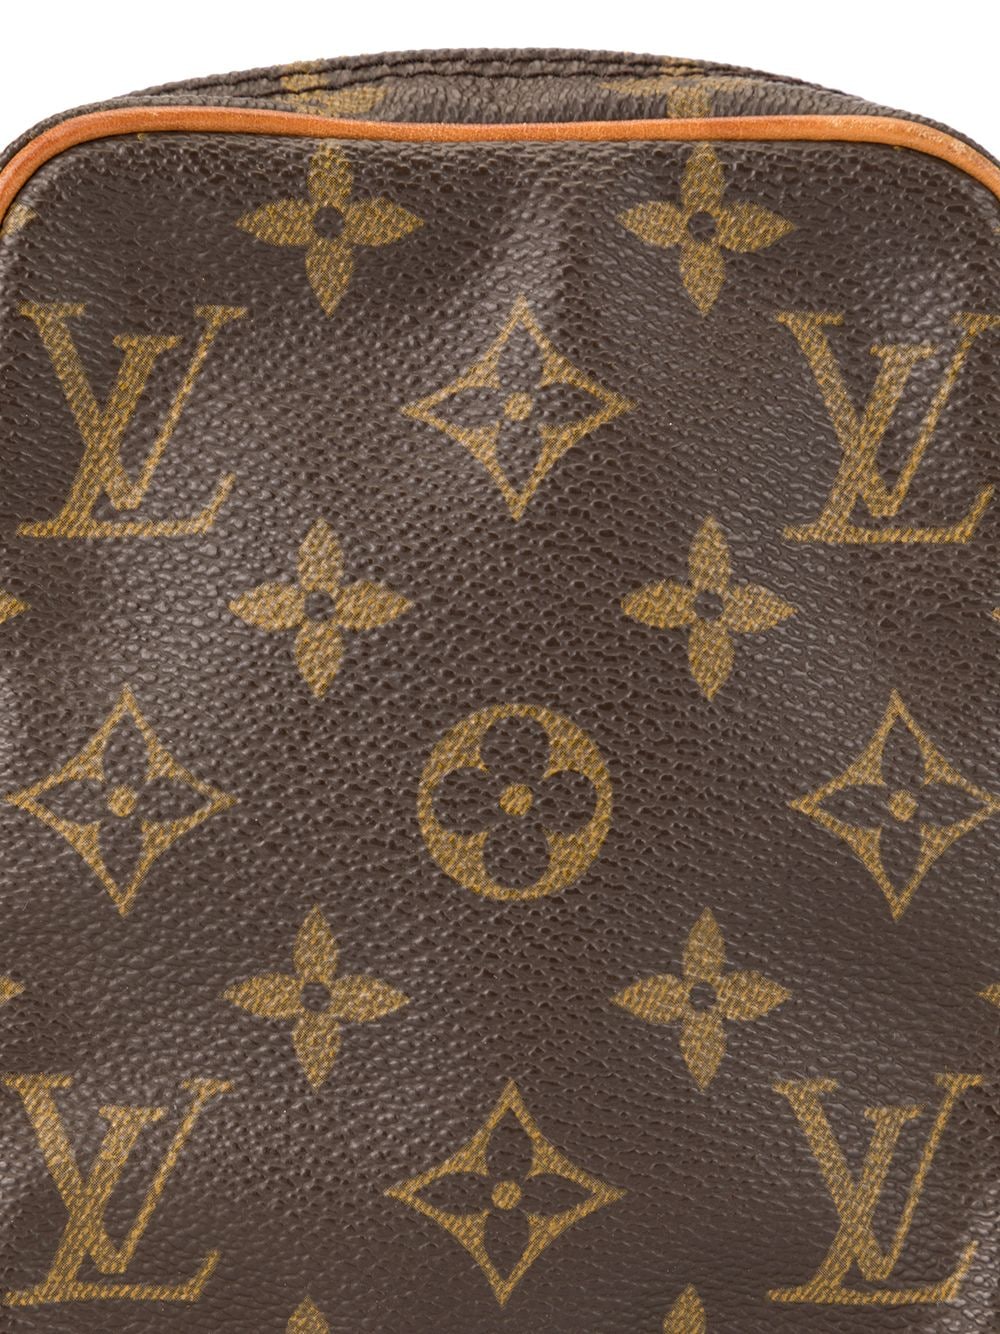 Louis Vuitton Danube Monogram Mini Cross Body Bag - Farfetch